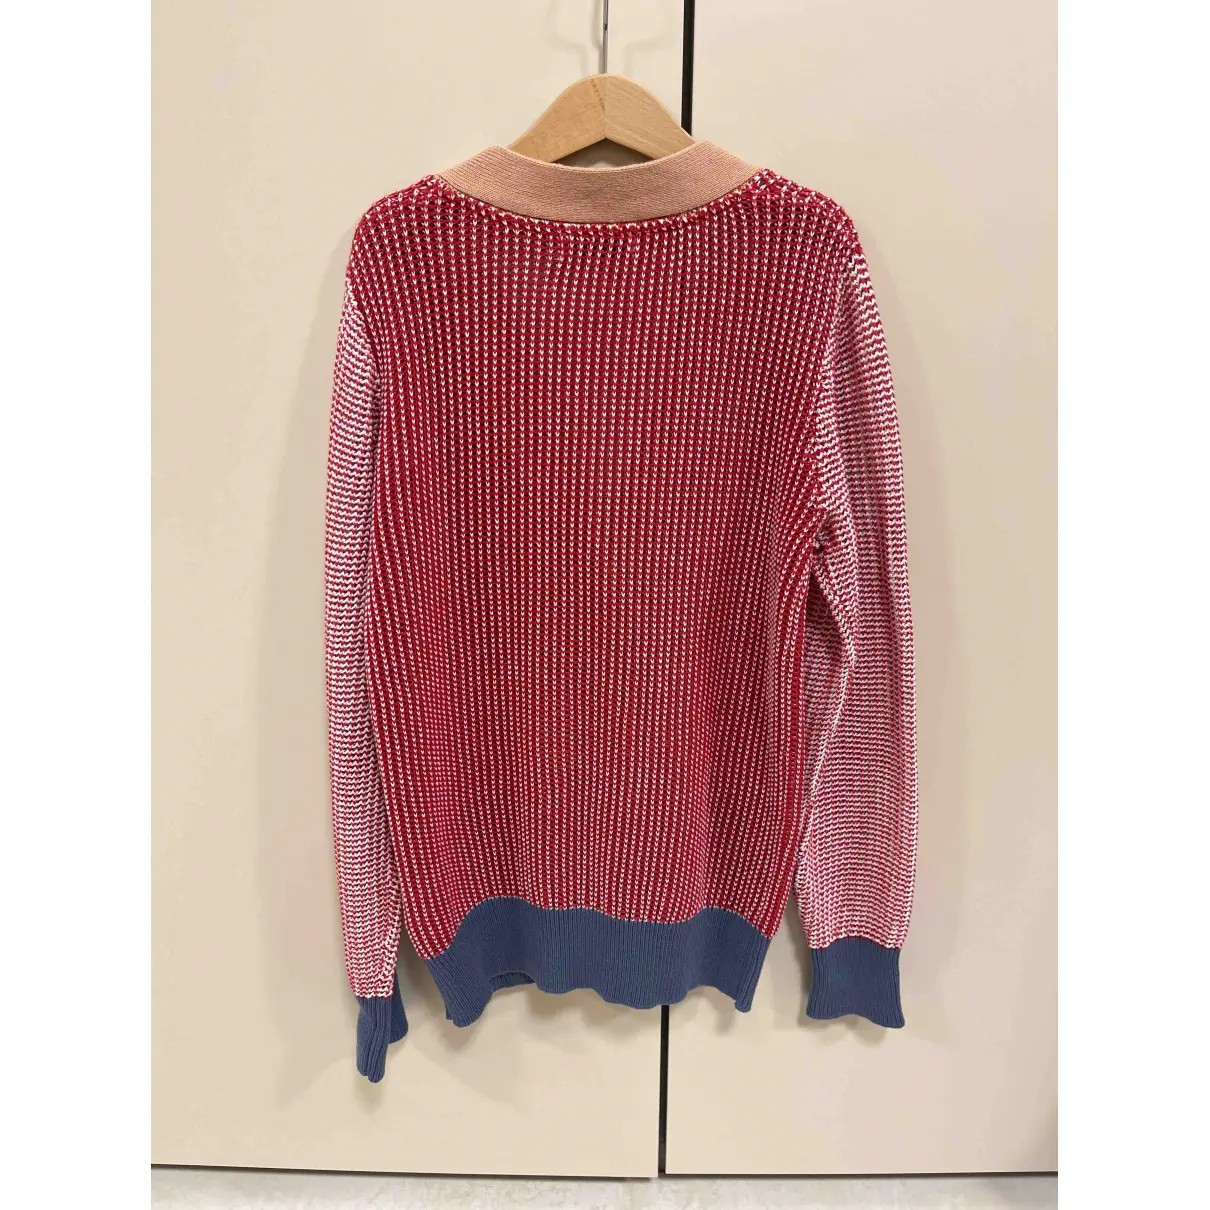 Buy Stella McCartney Knitwear online